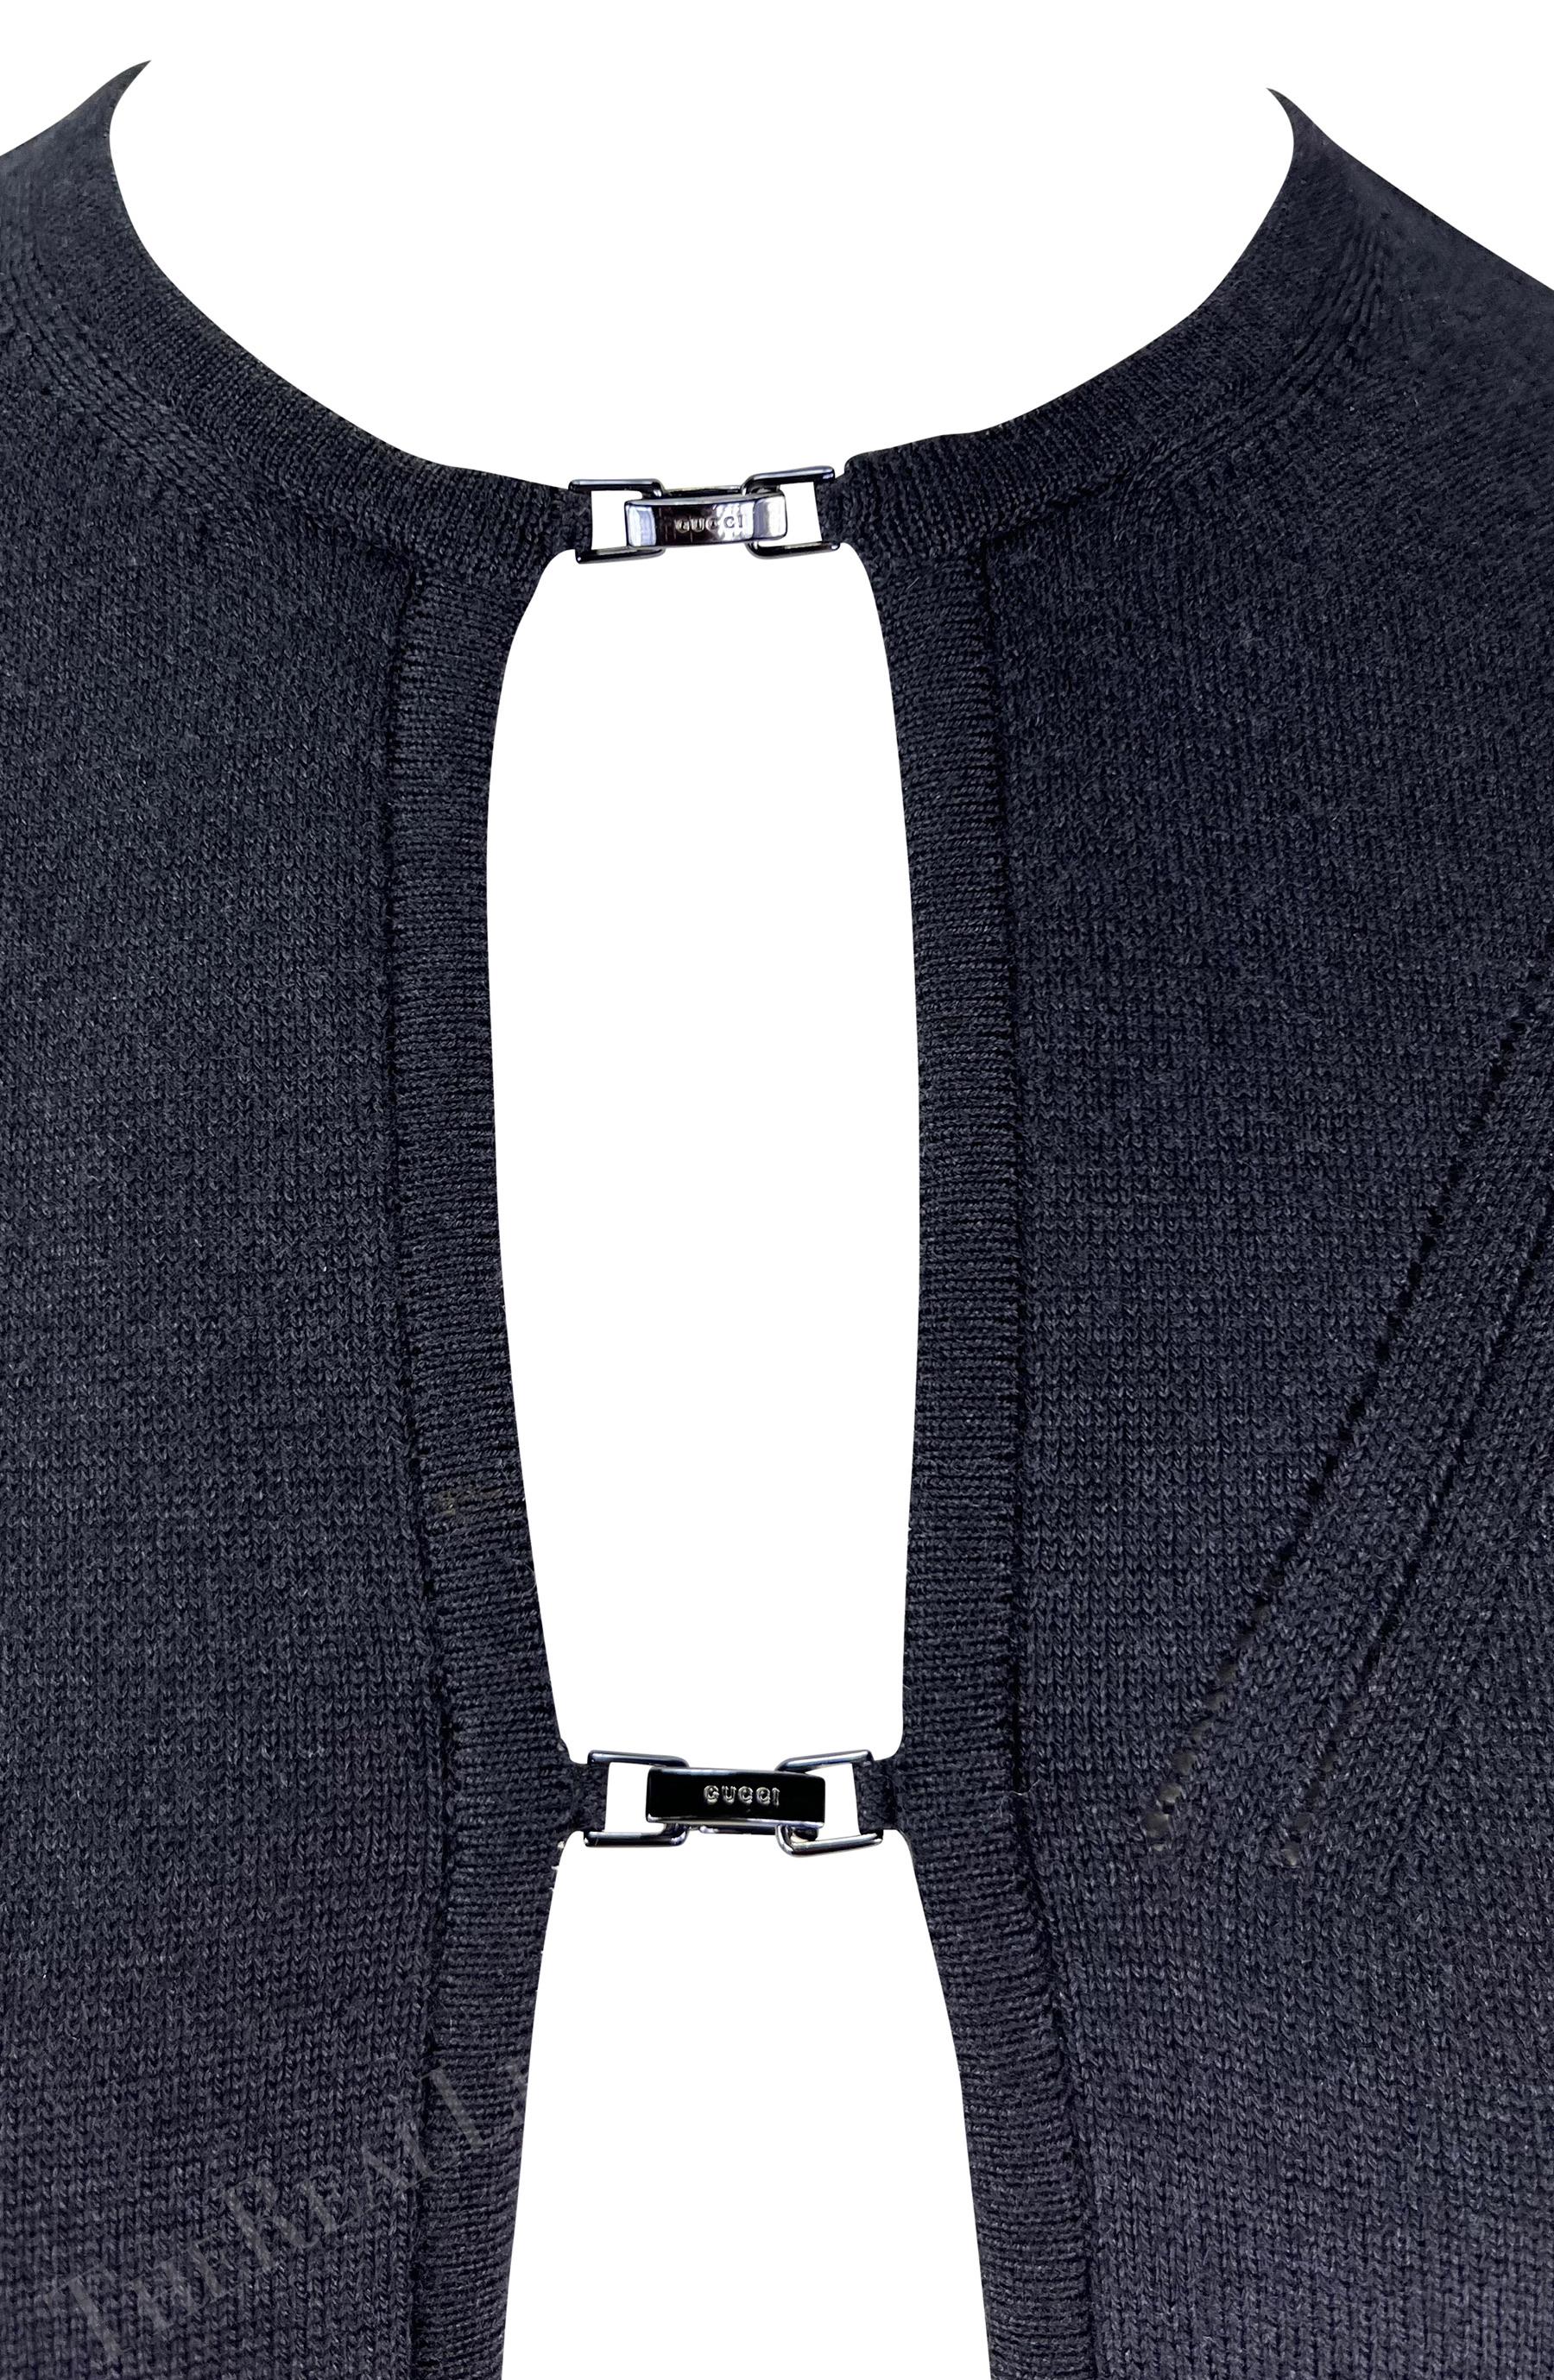 Ich präsentiere eine schwarze, offene Strickjacke von Gucci, entworfen von Tom Ford. Diese unglaubliche Strickjacke aus der Herbst/Winter-Kollektion 1998 verfügt über zwei Verschlüsse auf der Vorderseite, die jeweils mit dem Schriftzug 